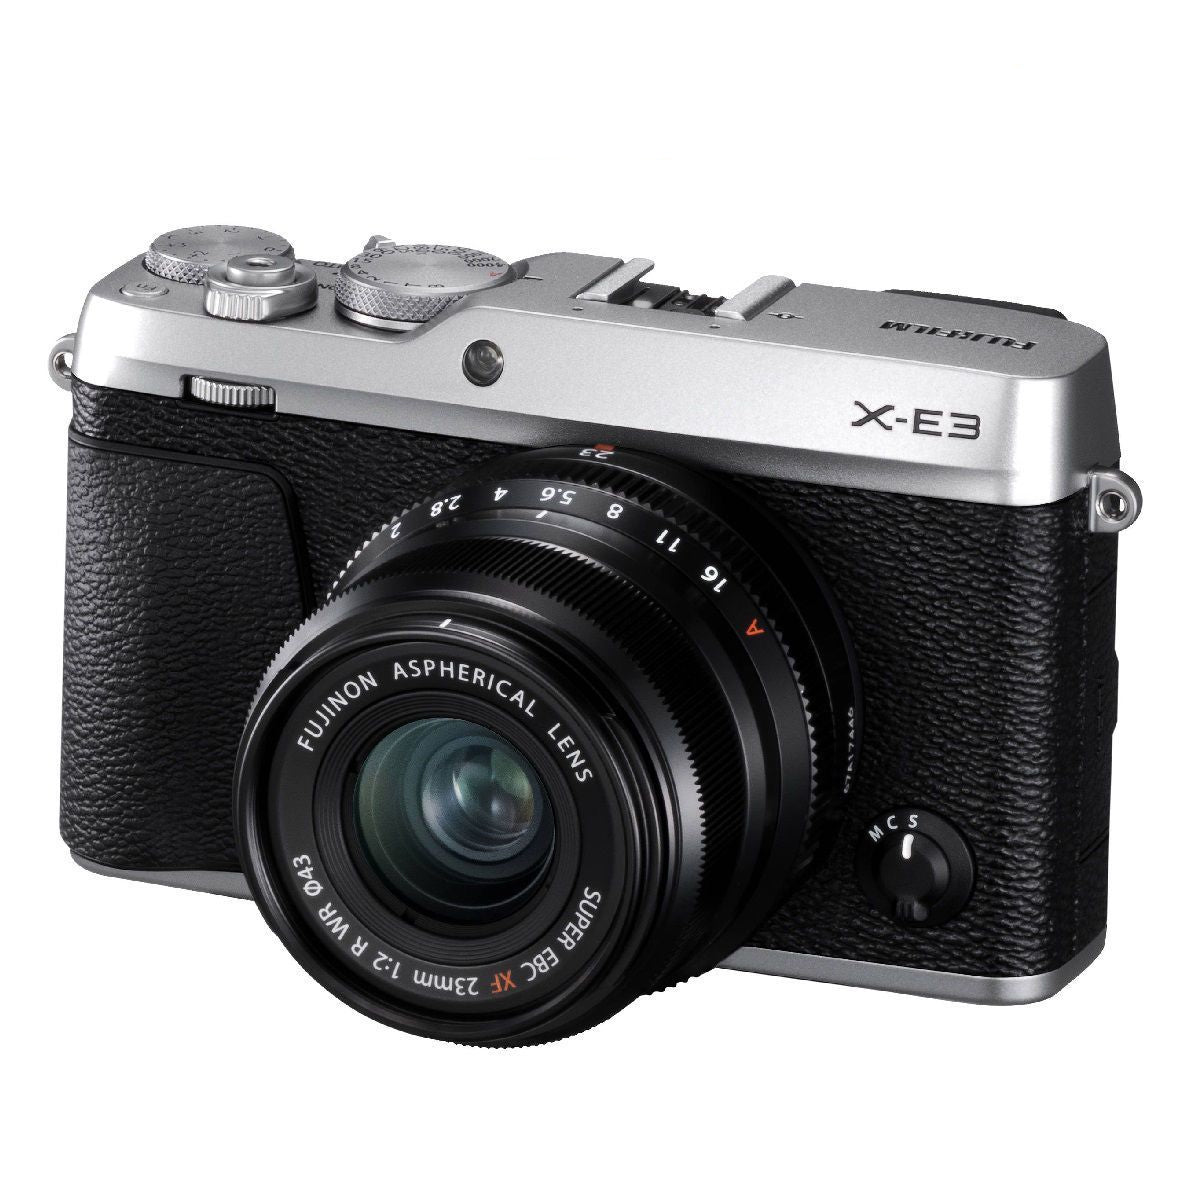 फ़ूजीफ़िल्म X E3 मिररलेस डिजिटल कैमरा 23Mm F2 लेंस सिल्वर के साथ